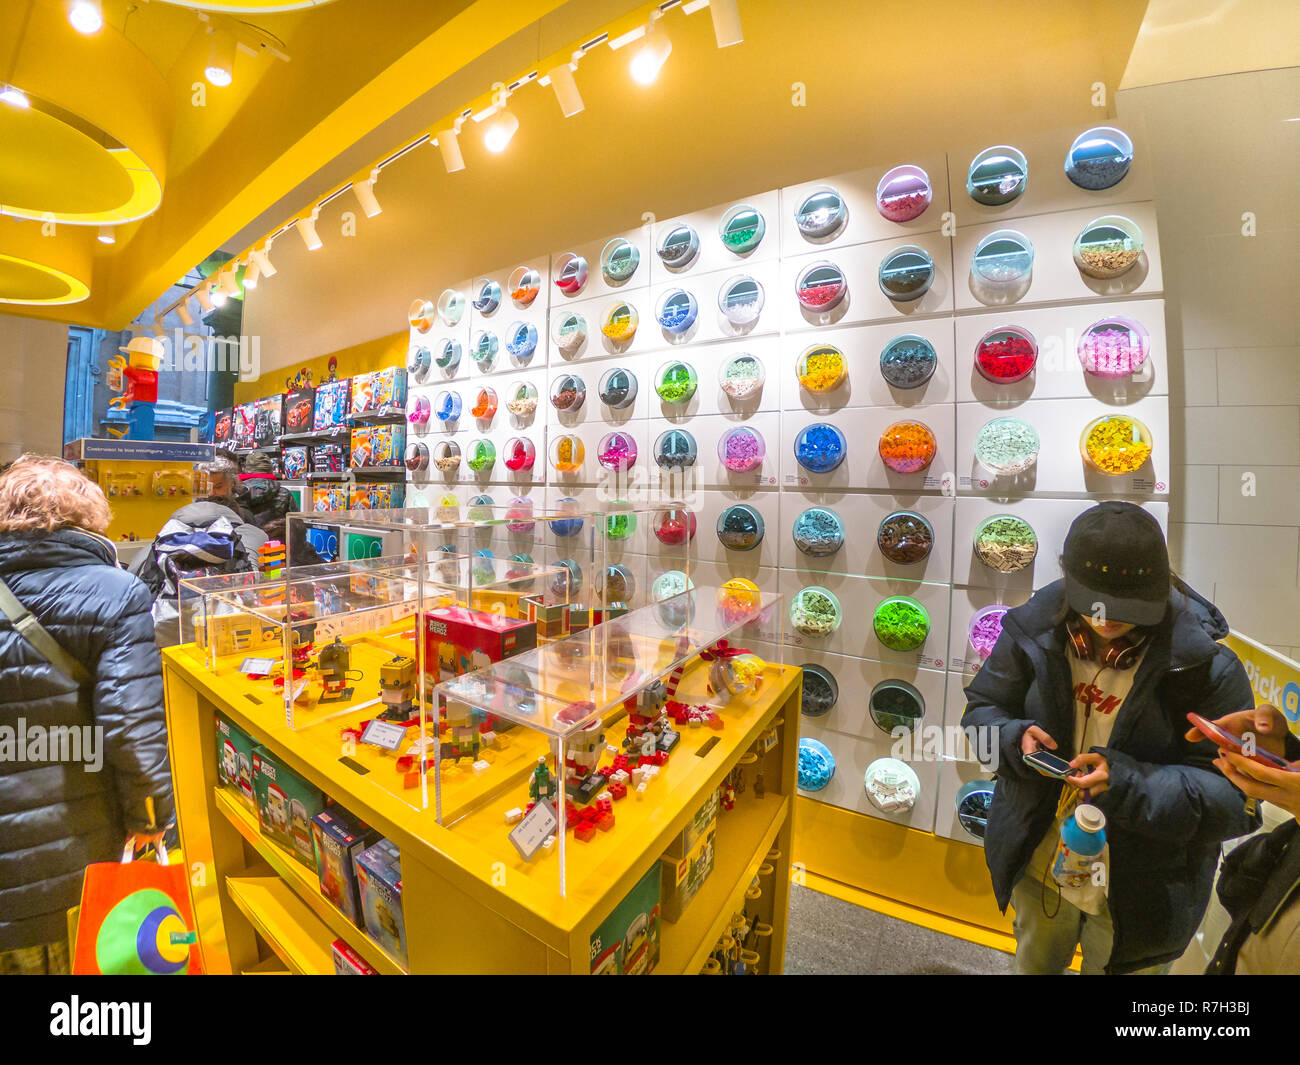 Bologne, Italie - 6 décembre 2018 : Lego multicolores les conteneurs remplis de briques Lego Lego dans le shop de Bologne. Banque D'Images